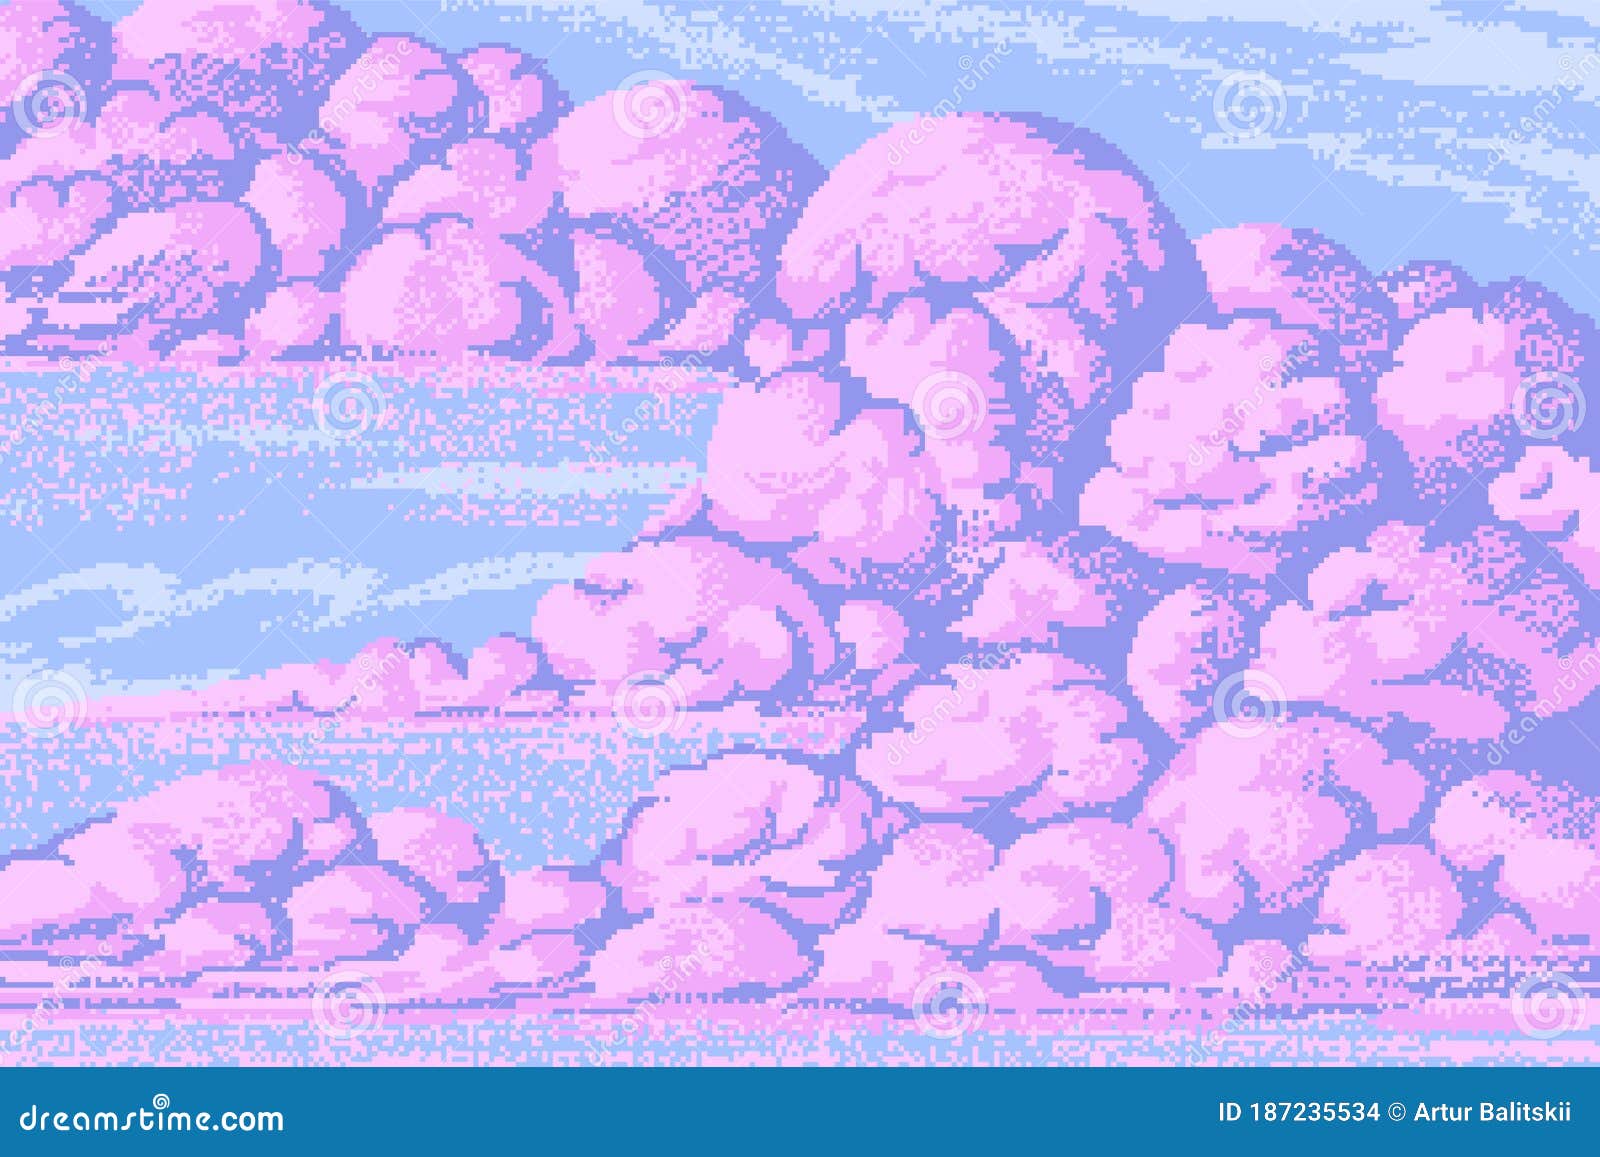 Bộ sưu tập Pixel Art Clouds đẹp mắt sẽ đưa bạn đến với một thế giới khác chỉ với vài cú click chuột. Hãy đắm mình trong những hình ảnh cực kì độc đáo và mê hoặc này ngay từ bây giờ!